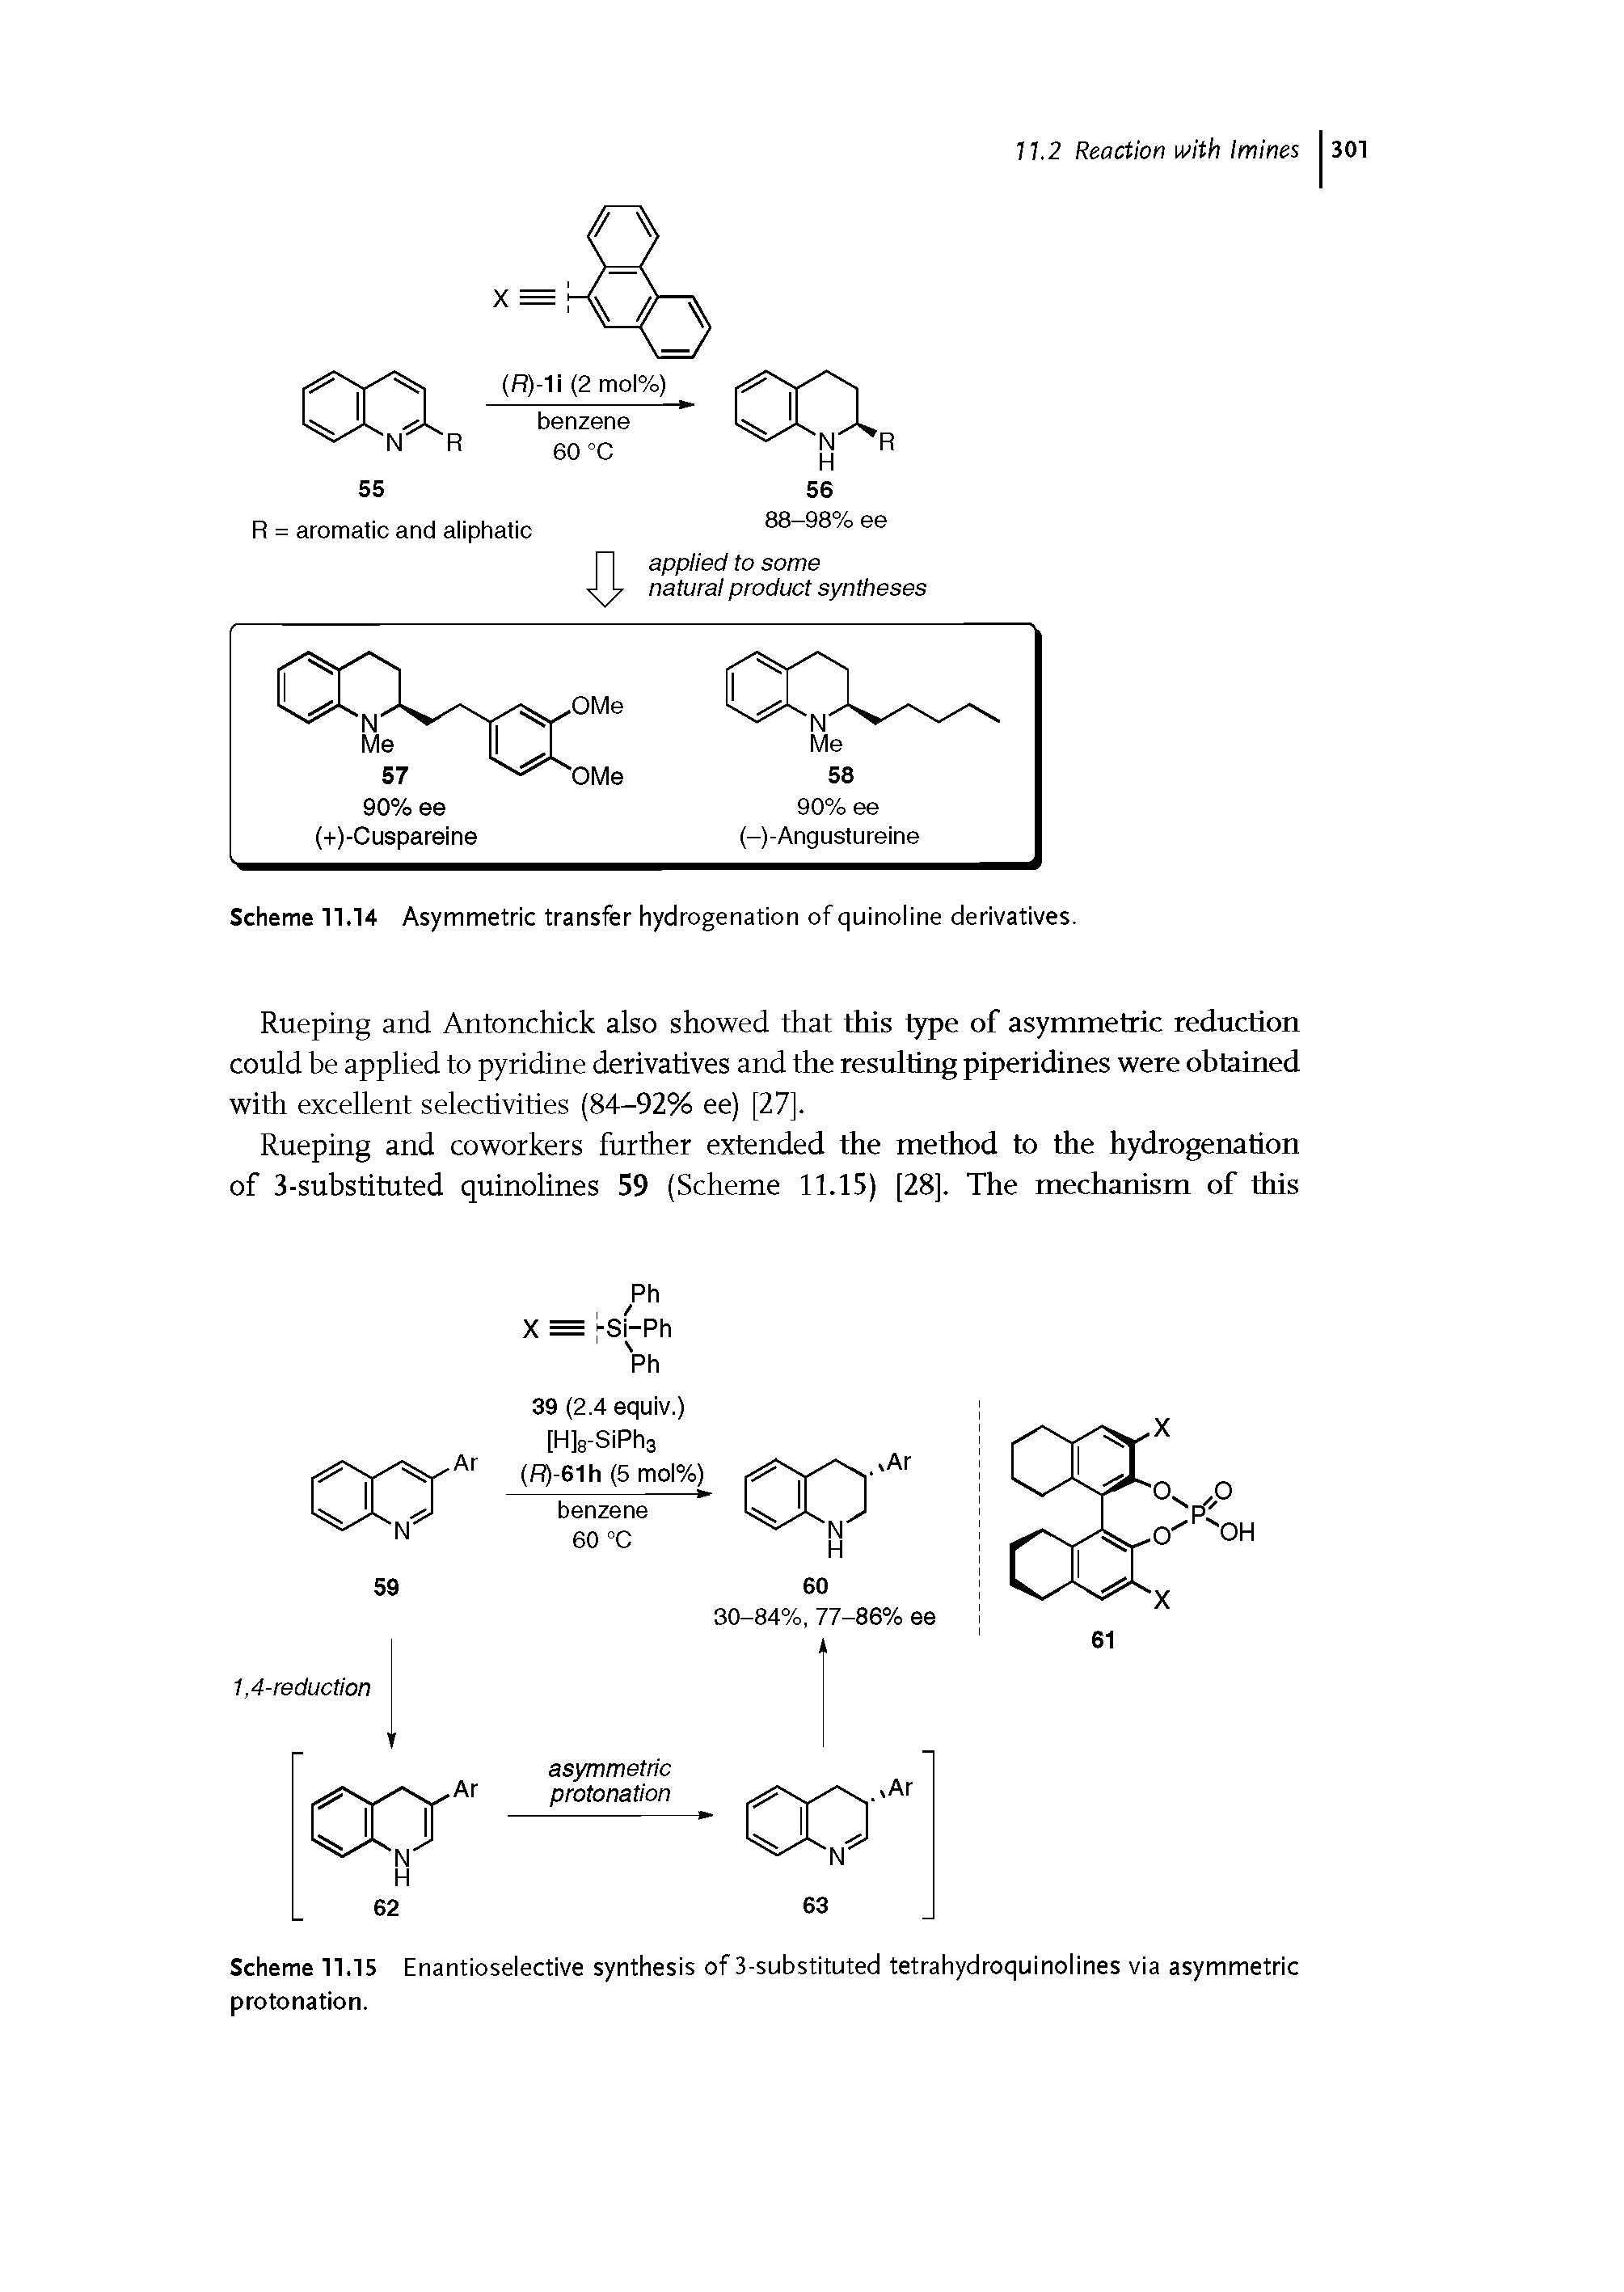 Scheme 11.14 Asymmetric transfer hydrogenation of quinoline derivatives.